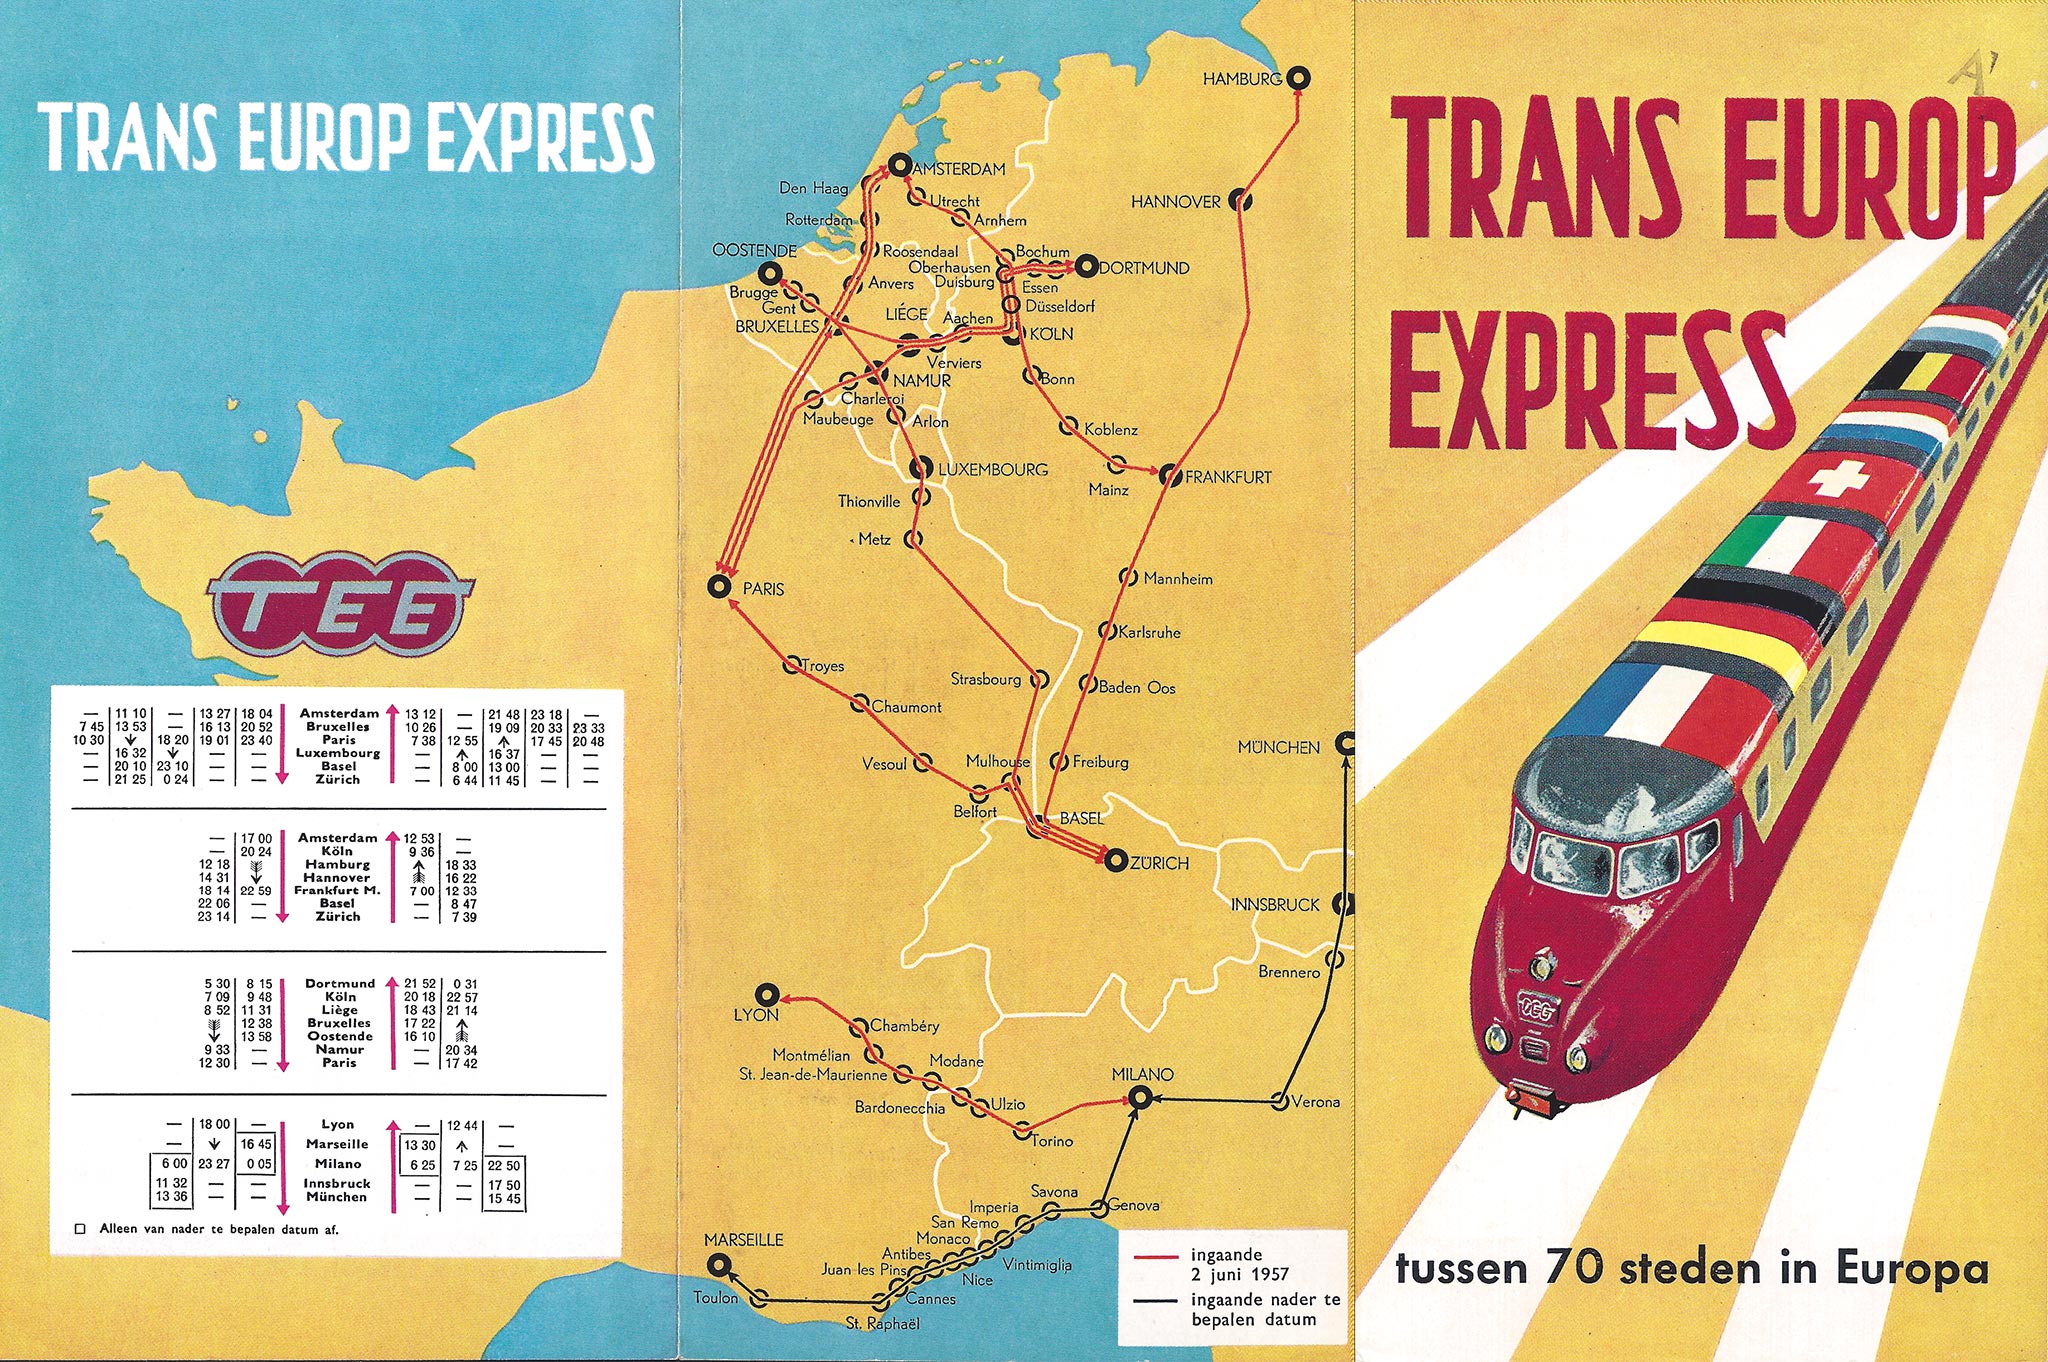 trans europ express